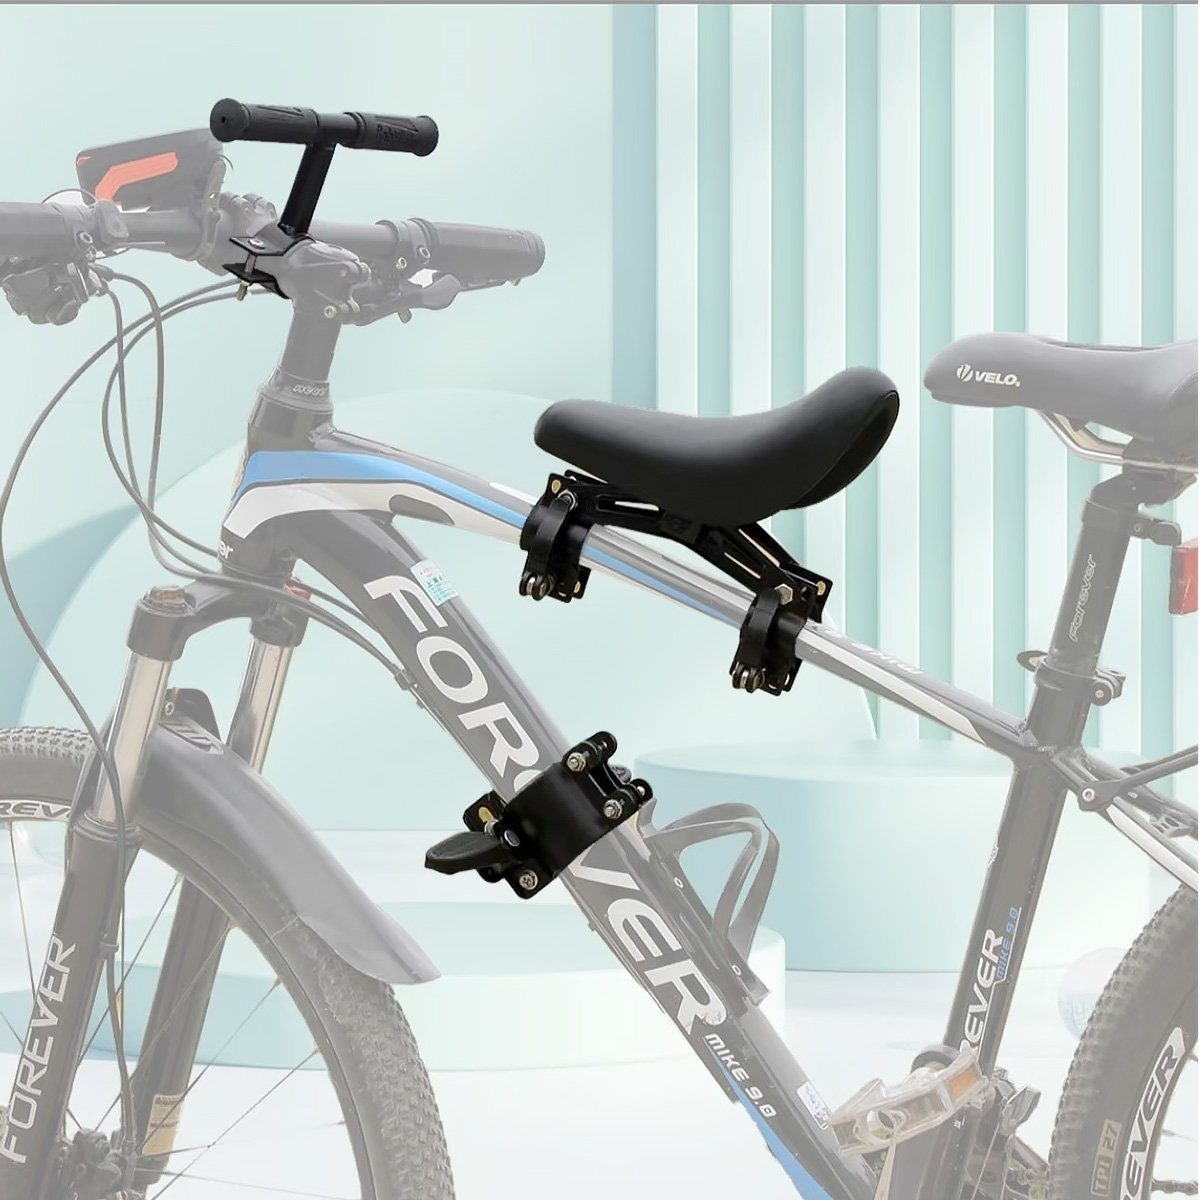 MidGard Fahrradkindersitz für Befestigen vorne am Rahmen, Kinder-Fahrradsitz  mit Lenkergriffe, Universell & Pflegeleicht: Passt an viele Fahrräder und  ist einfach zu reinigen.